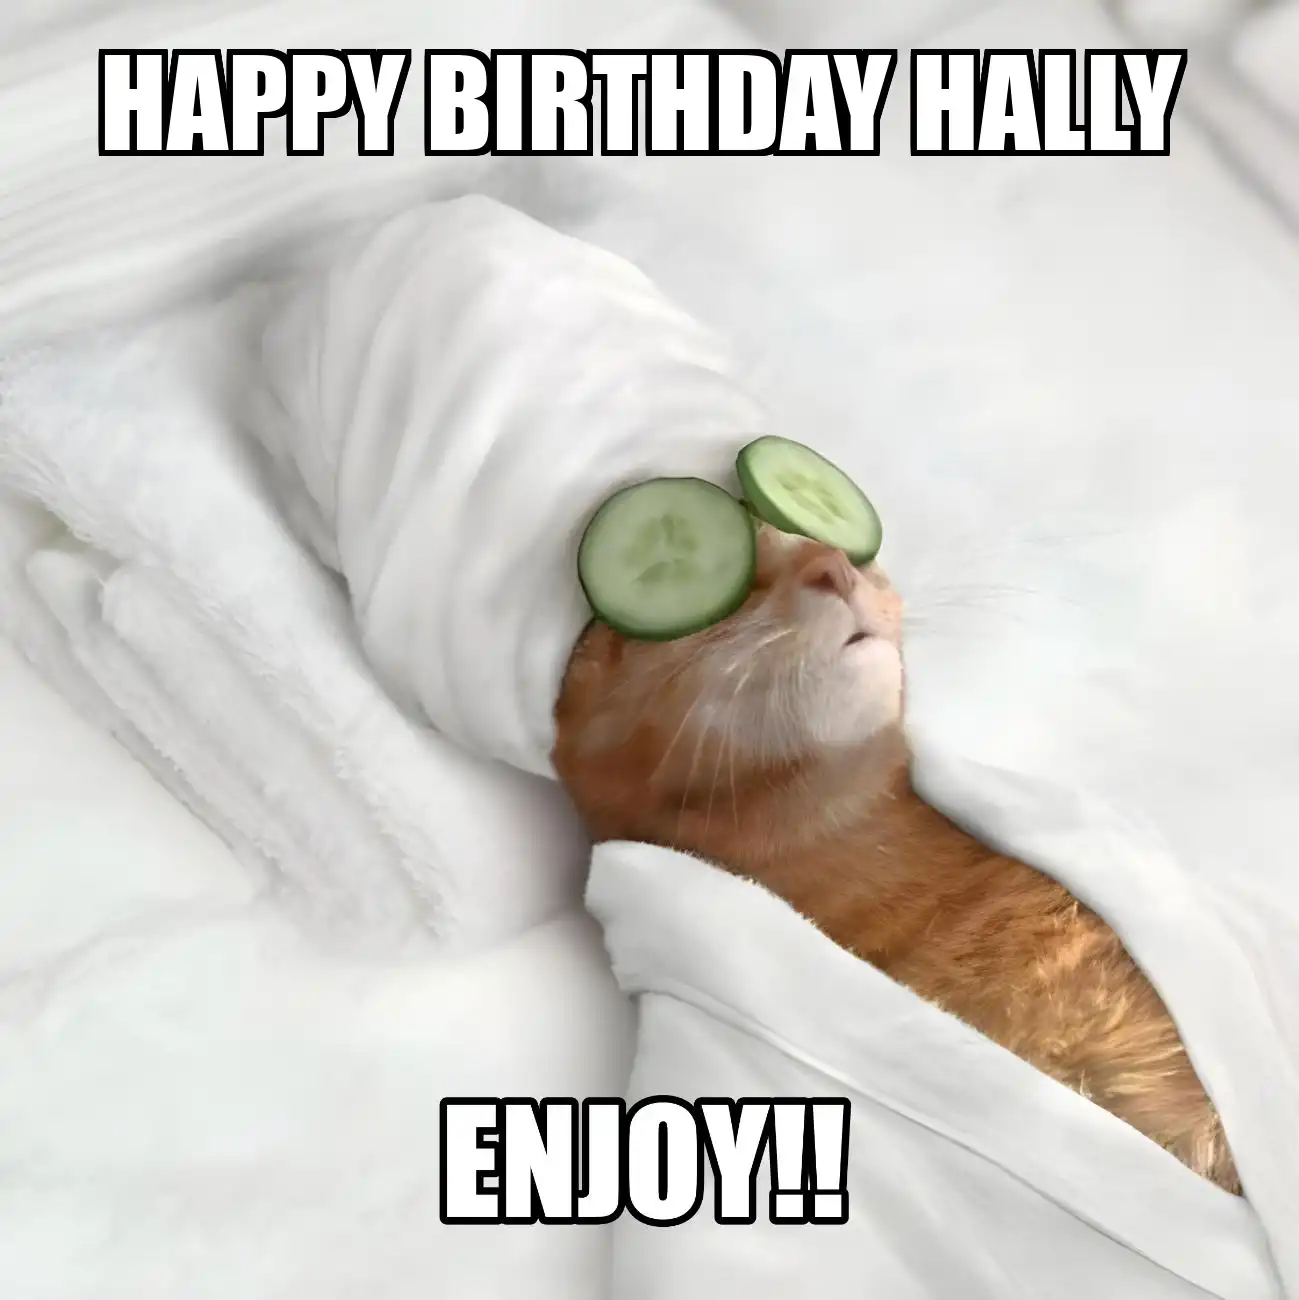 Happy Birthday Hally Enjoy Cat Meme